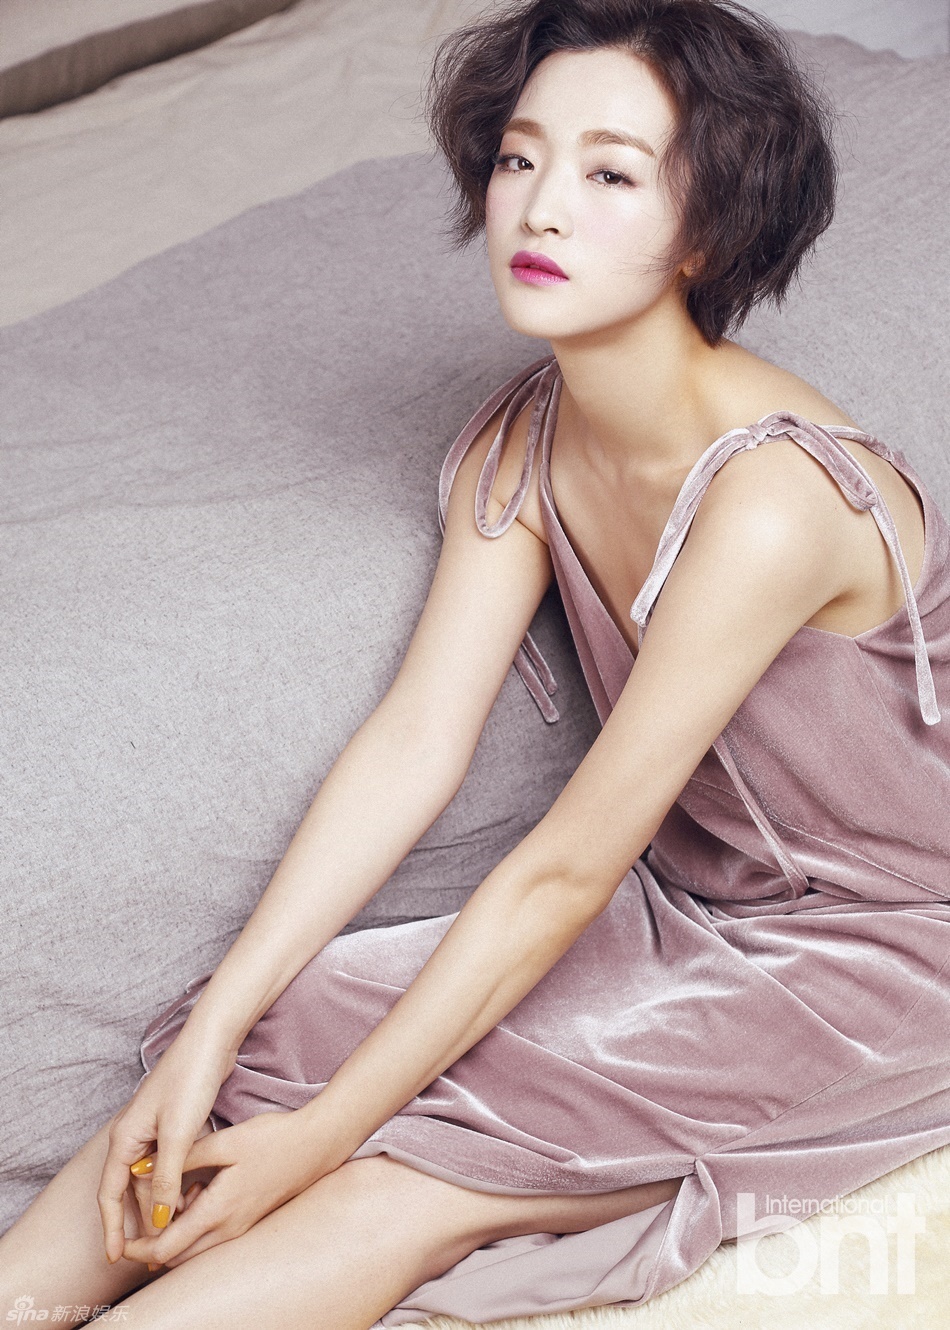 组图:韩女星李艺恩时尚写真 短发造型干练